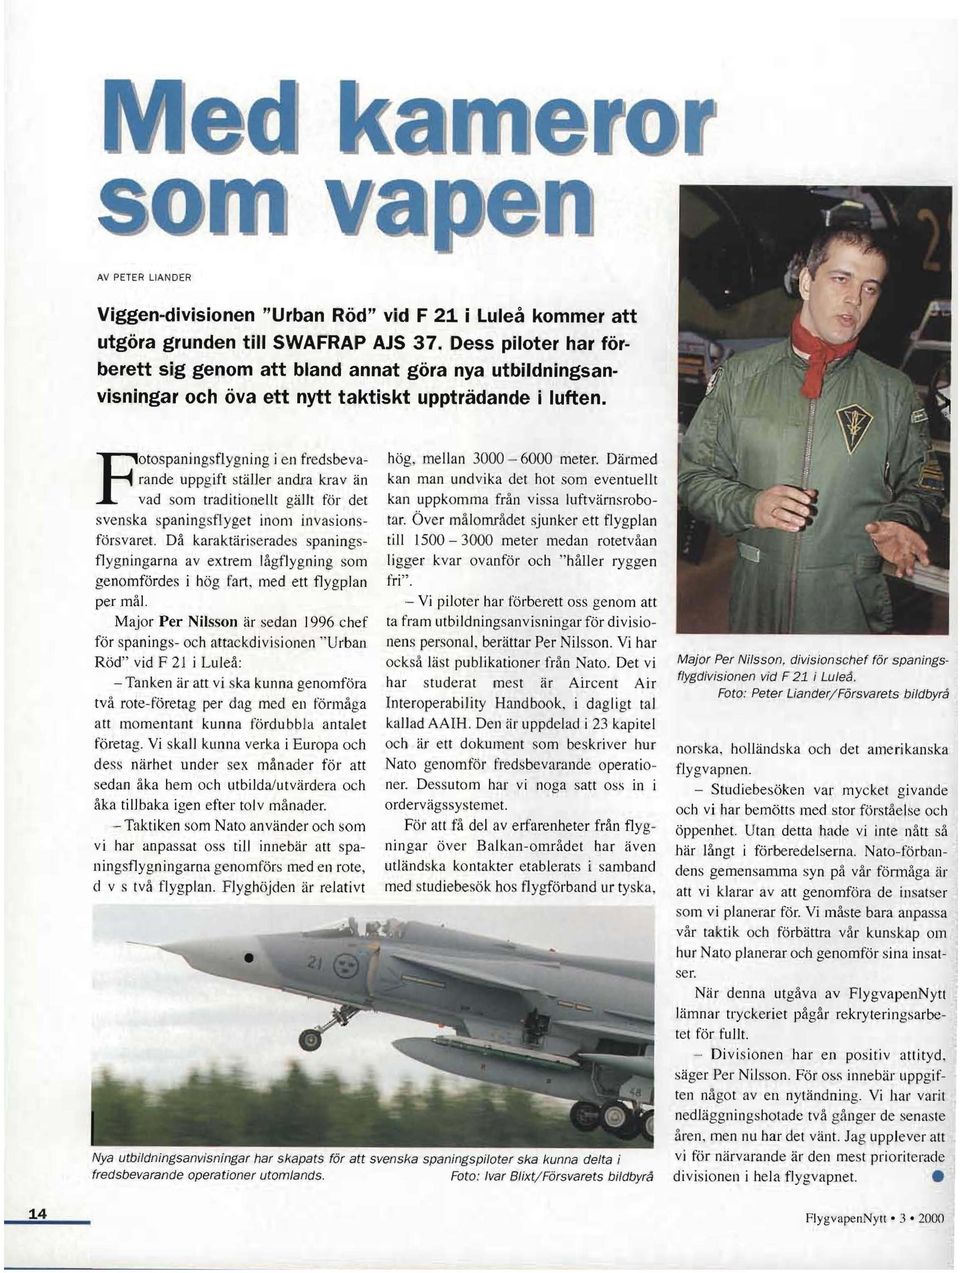 PotospaningSflygning i en fredsbevarande uppgift ställer andra krav än vad som traditionellt gällt för det svenska spaningsflyget inom invasionsförsvaret.